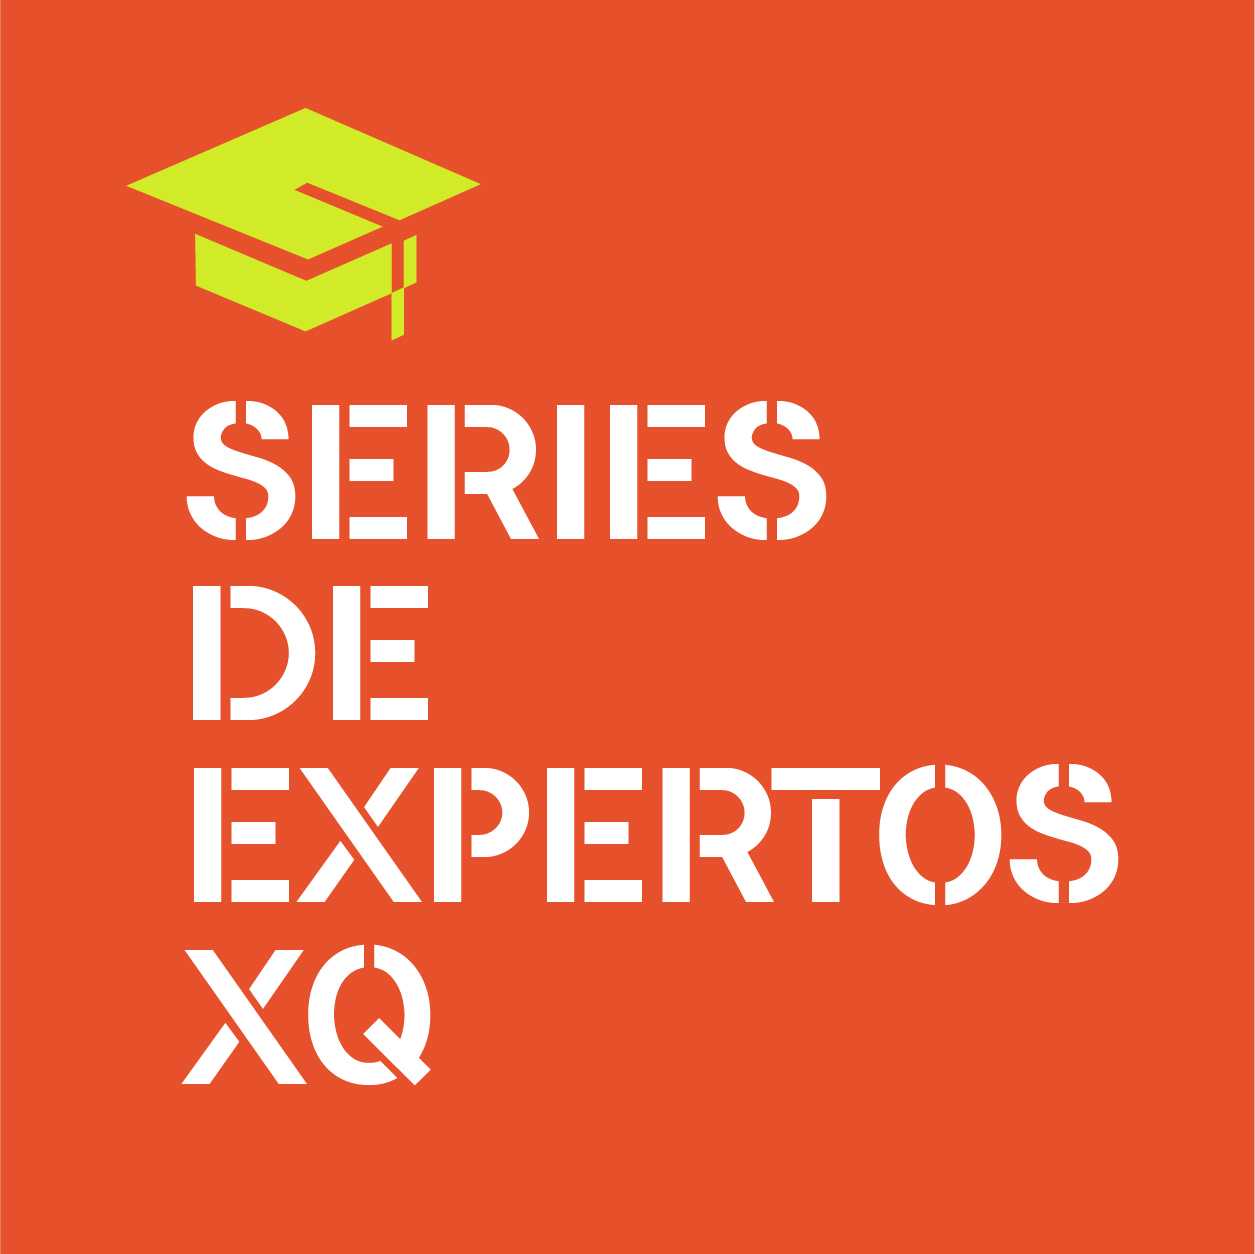 Series de express XQ